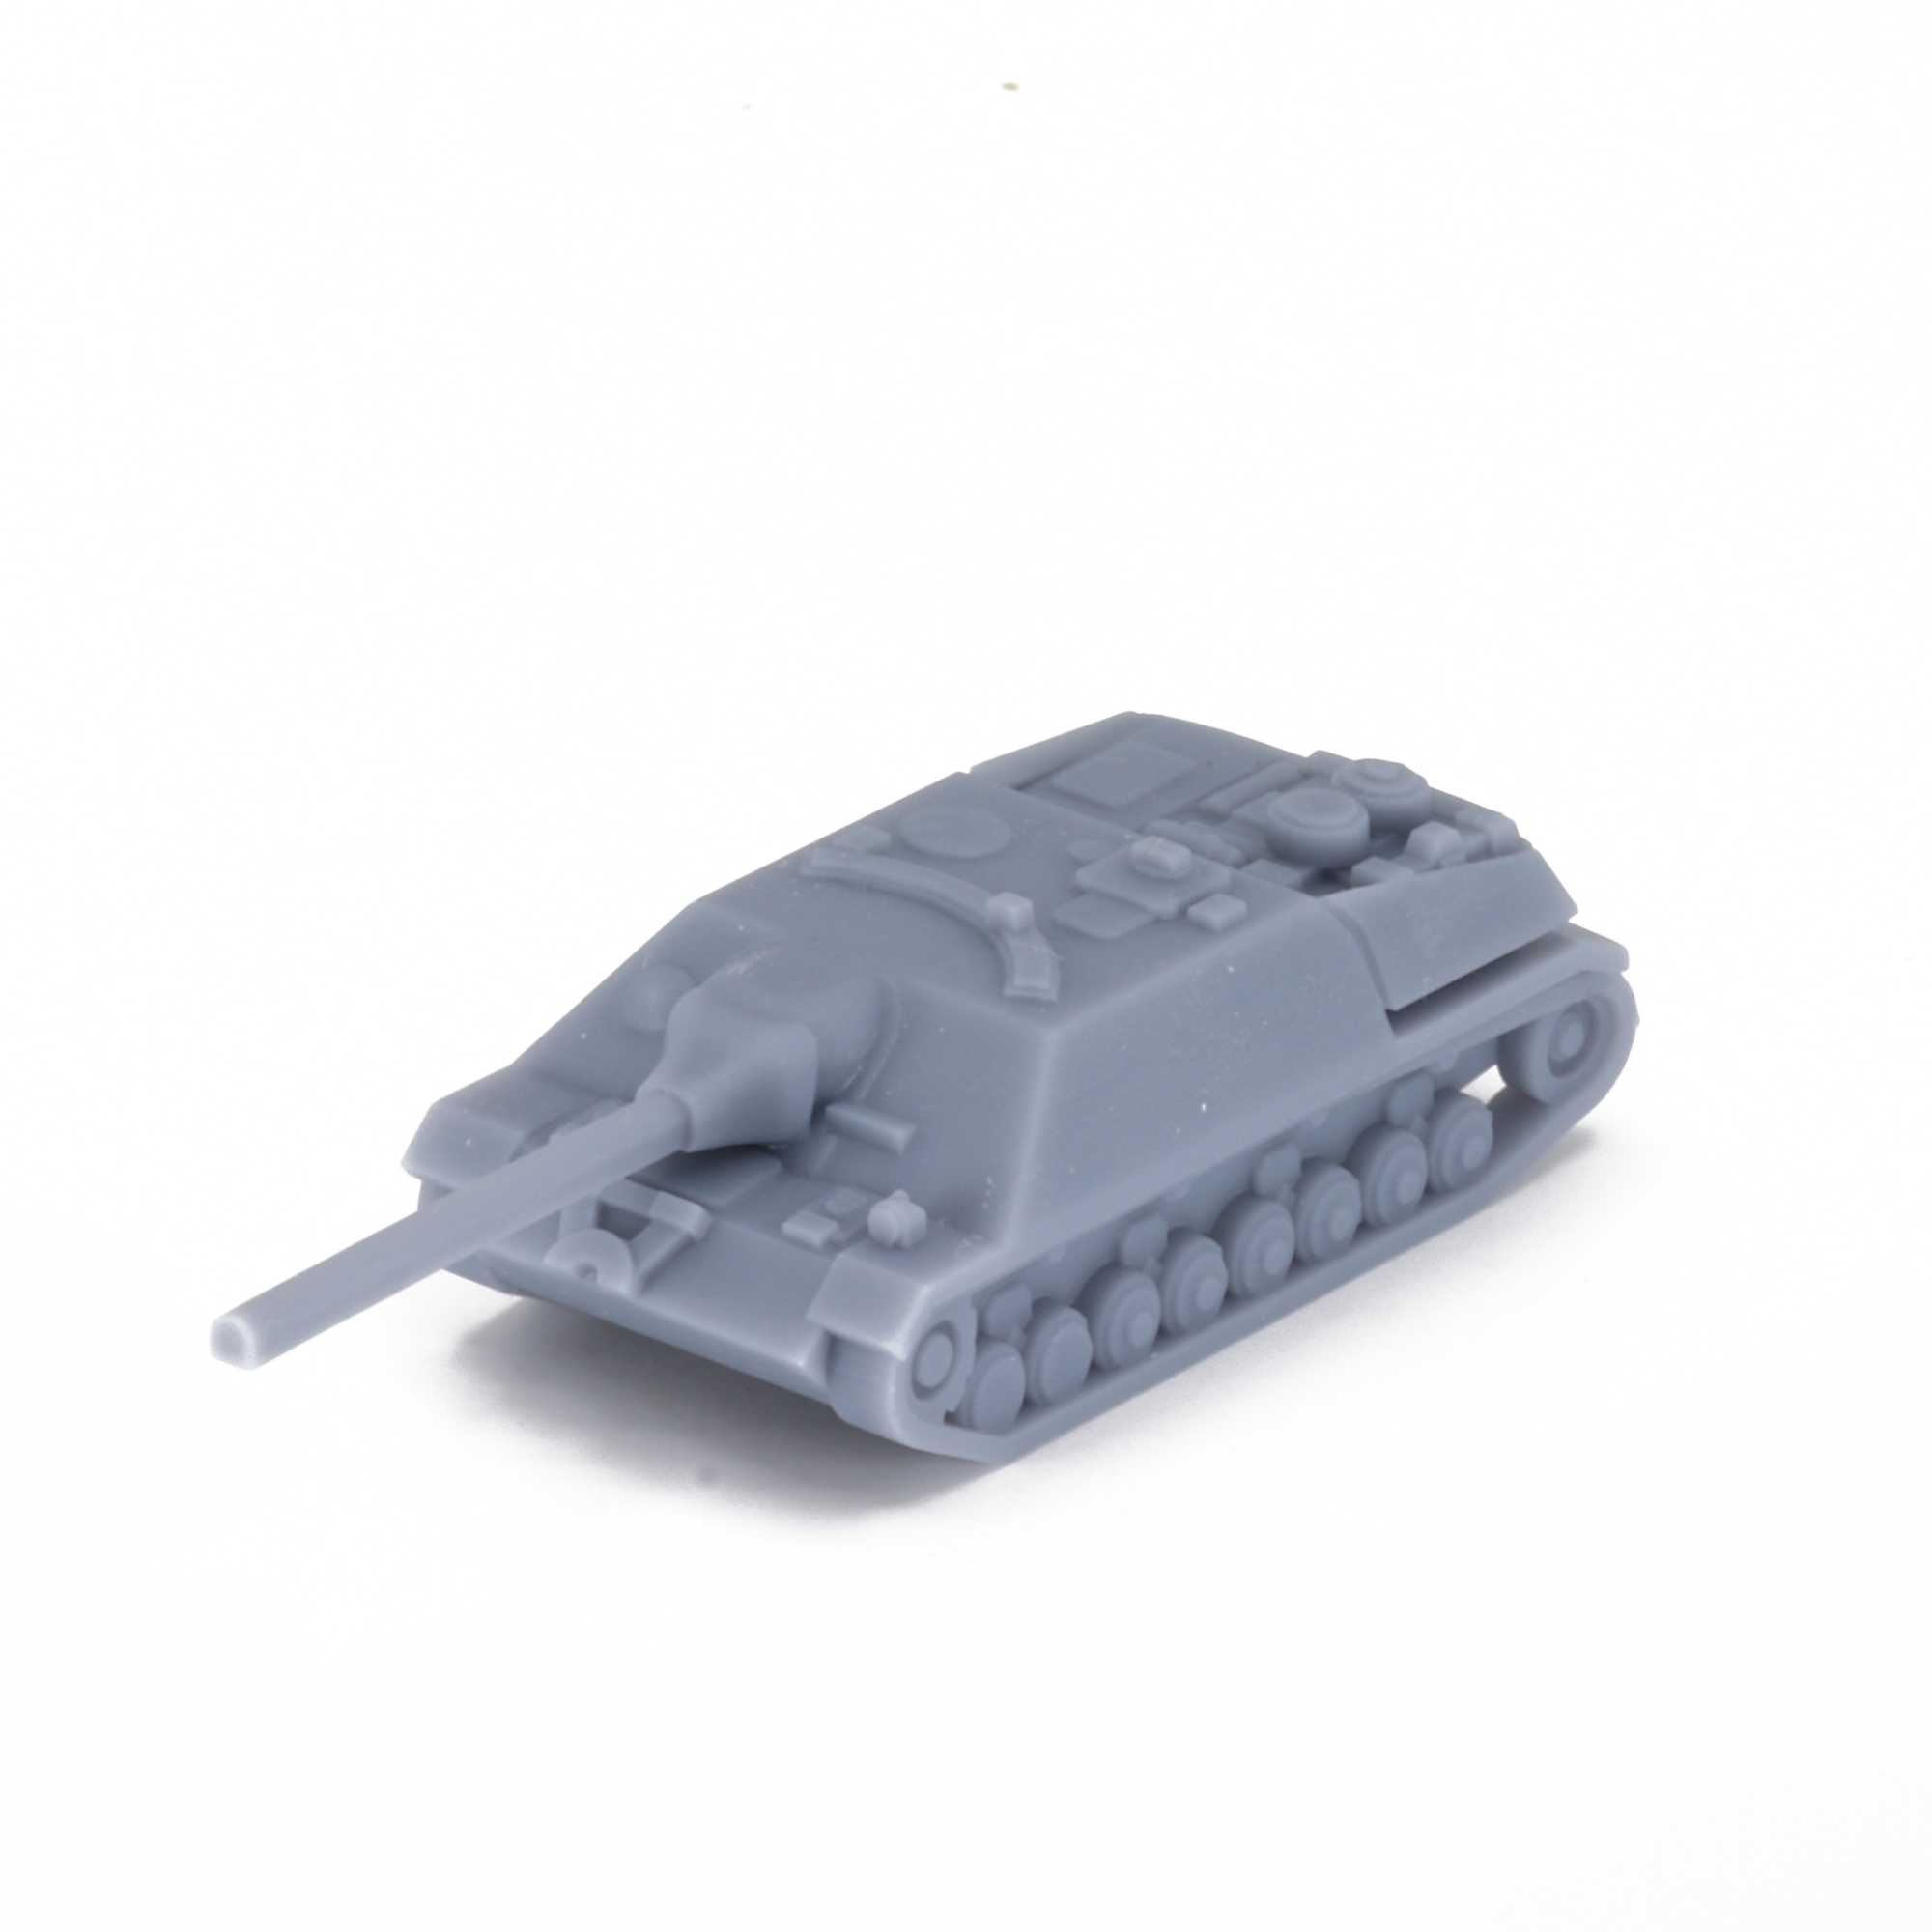 Jagdpanzer IV L70